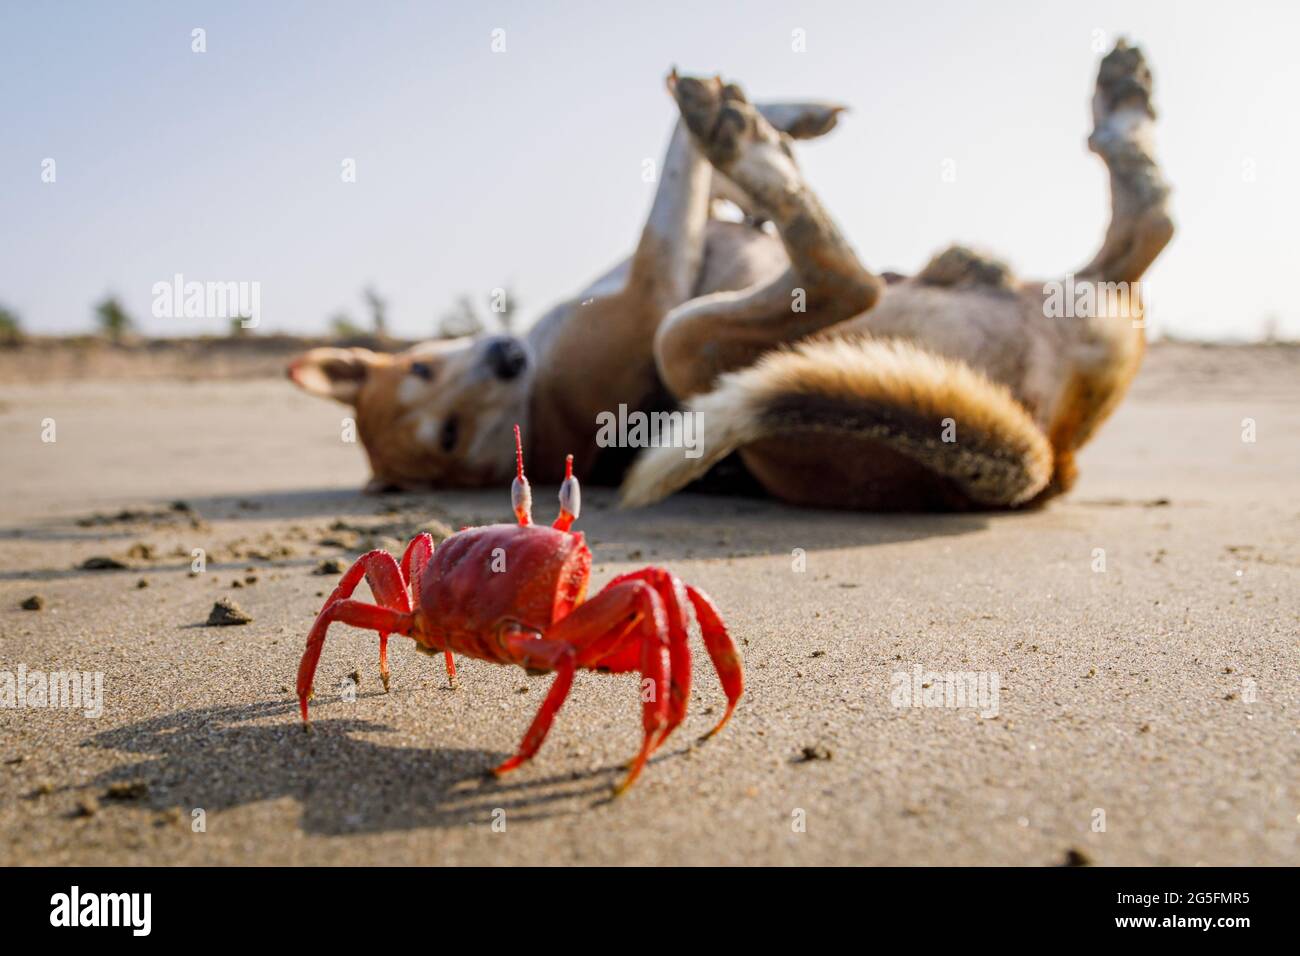 Un granchio fantasma rosso e un cane randagio godere di una spiaggia libera dai turisti a Bazar Cox in Bangladesh. Il granchio fantasma rosso è stato minacciato, in quanto i turisti stanno violando il loro habitat. Tuttavia, la pandemia del COVID 19 e la conseguente assenza di turisti hanno dato ai granchi una ben meritata possibilità di rimbalzo. Foto Stock